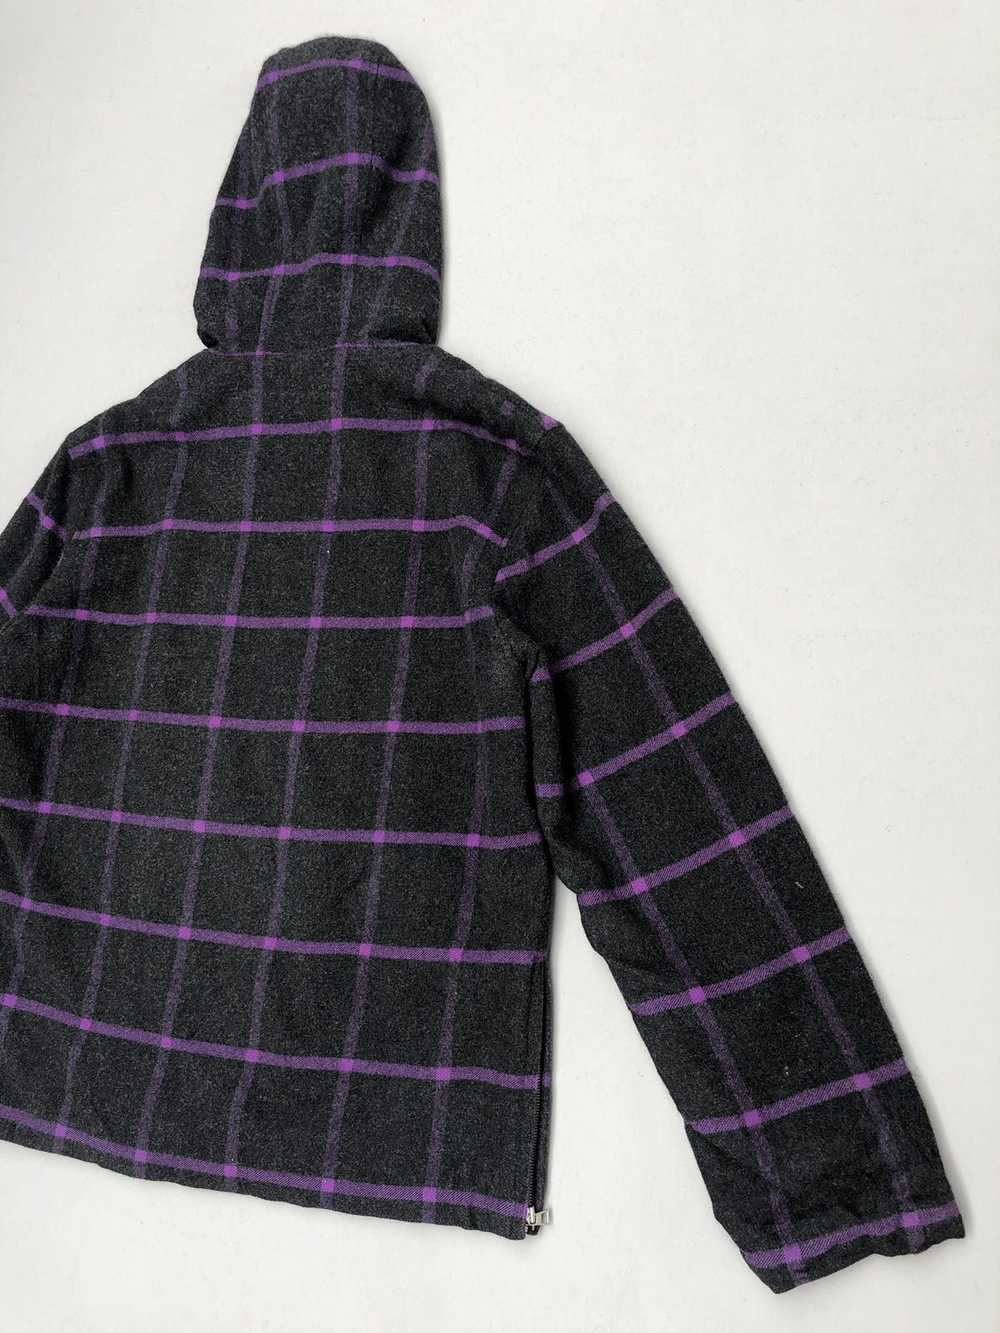 Paul Smith Plaid Tartan Hooded Wool Jacket - image 9